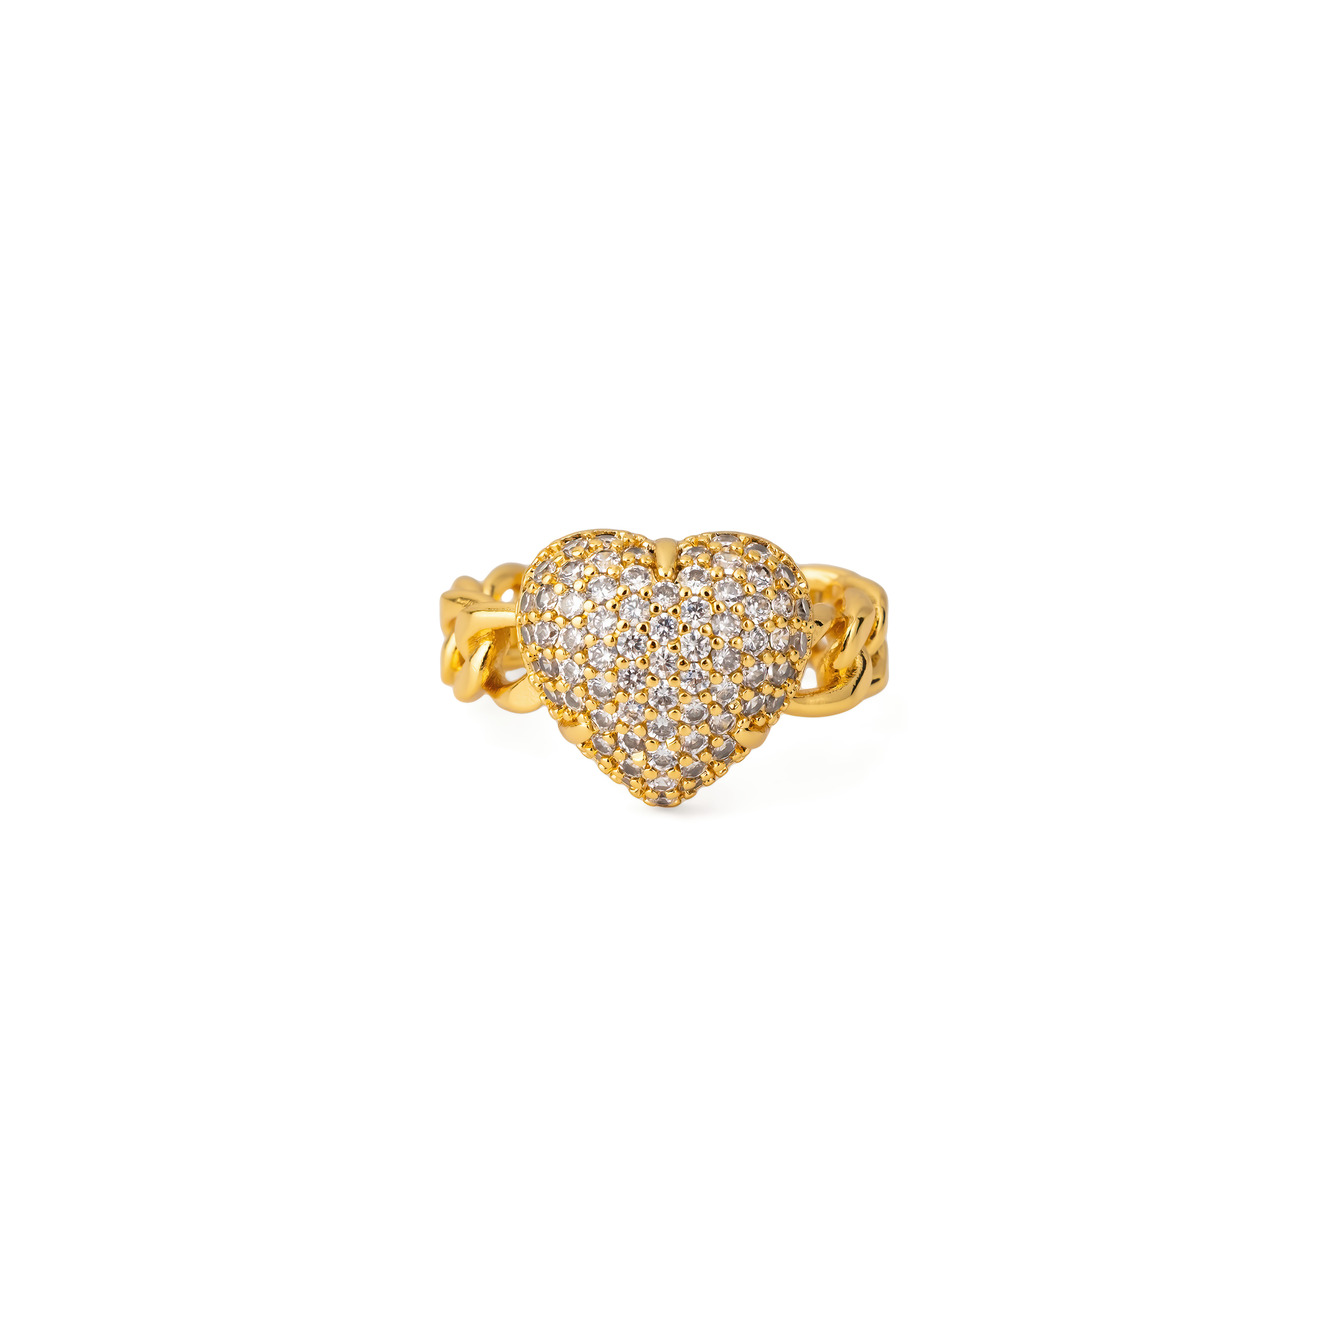 Herald Percy Золотистое кольцо-сердце с россыпью кристаллов